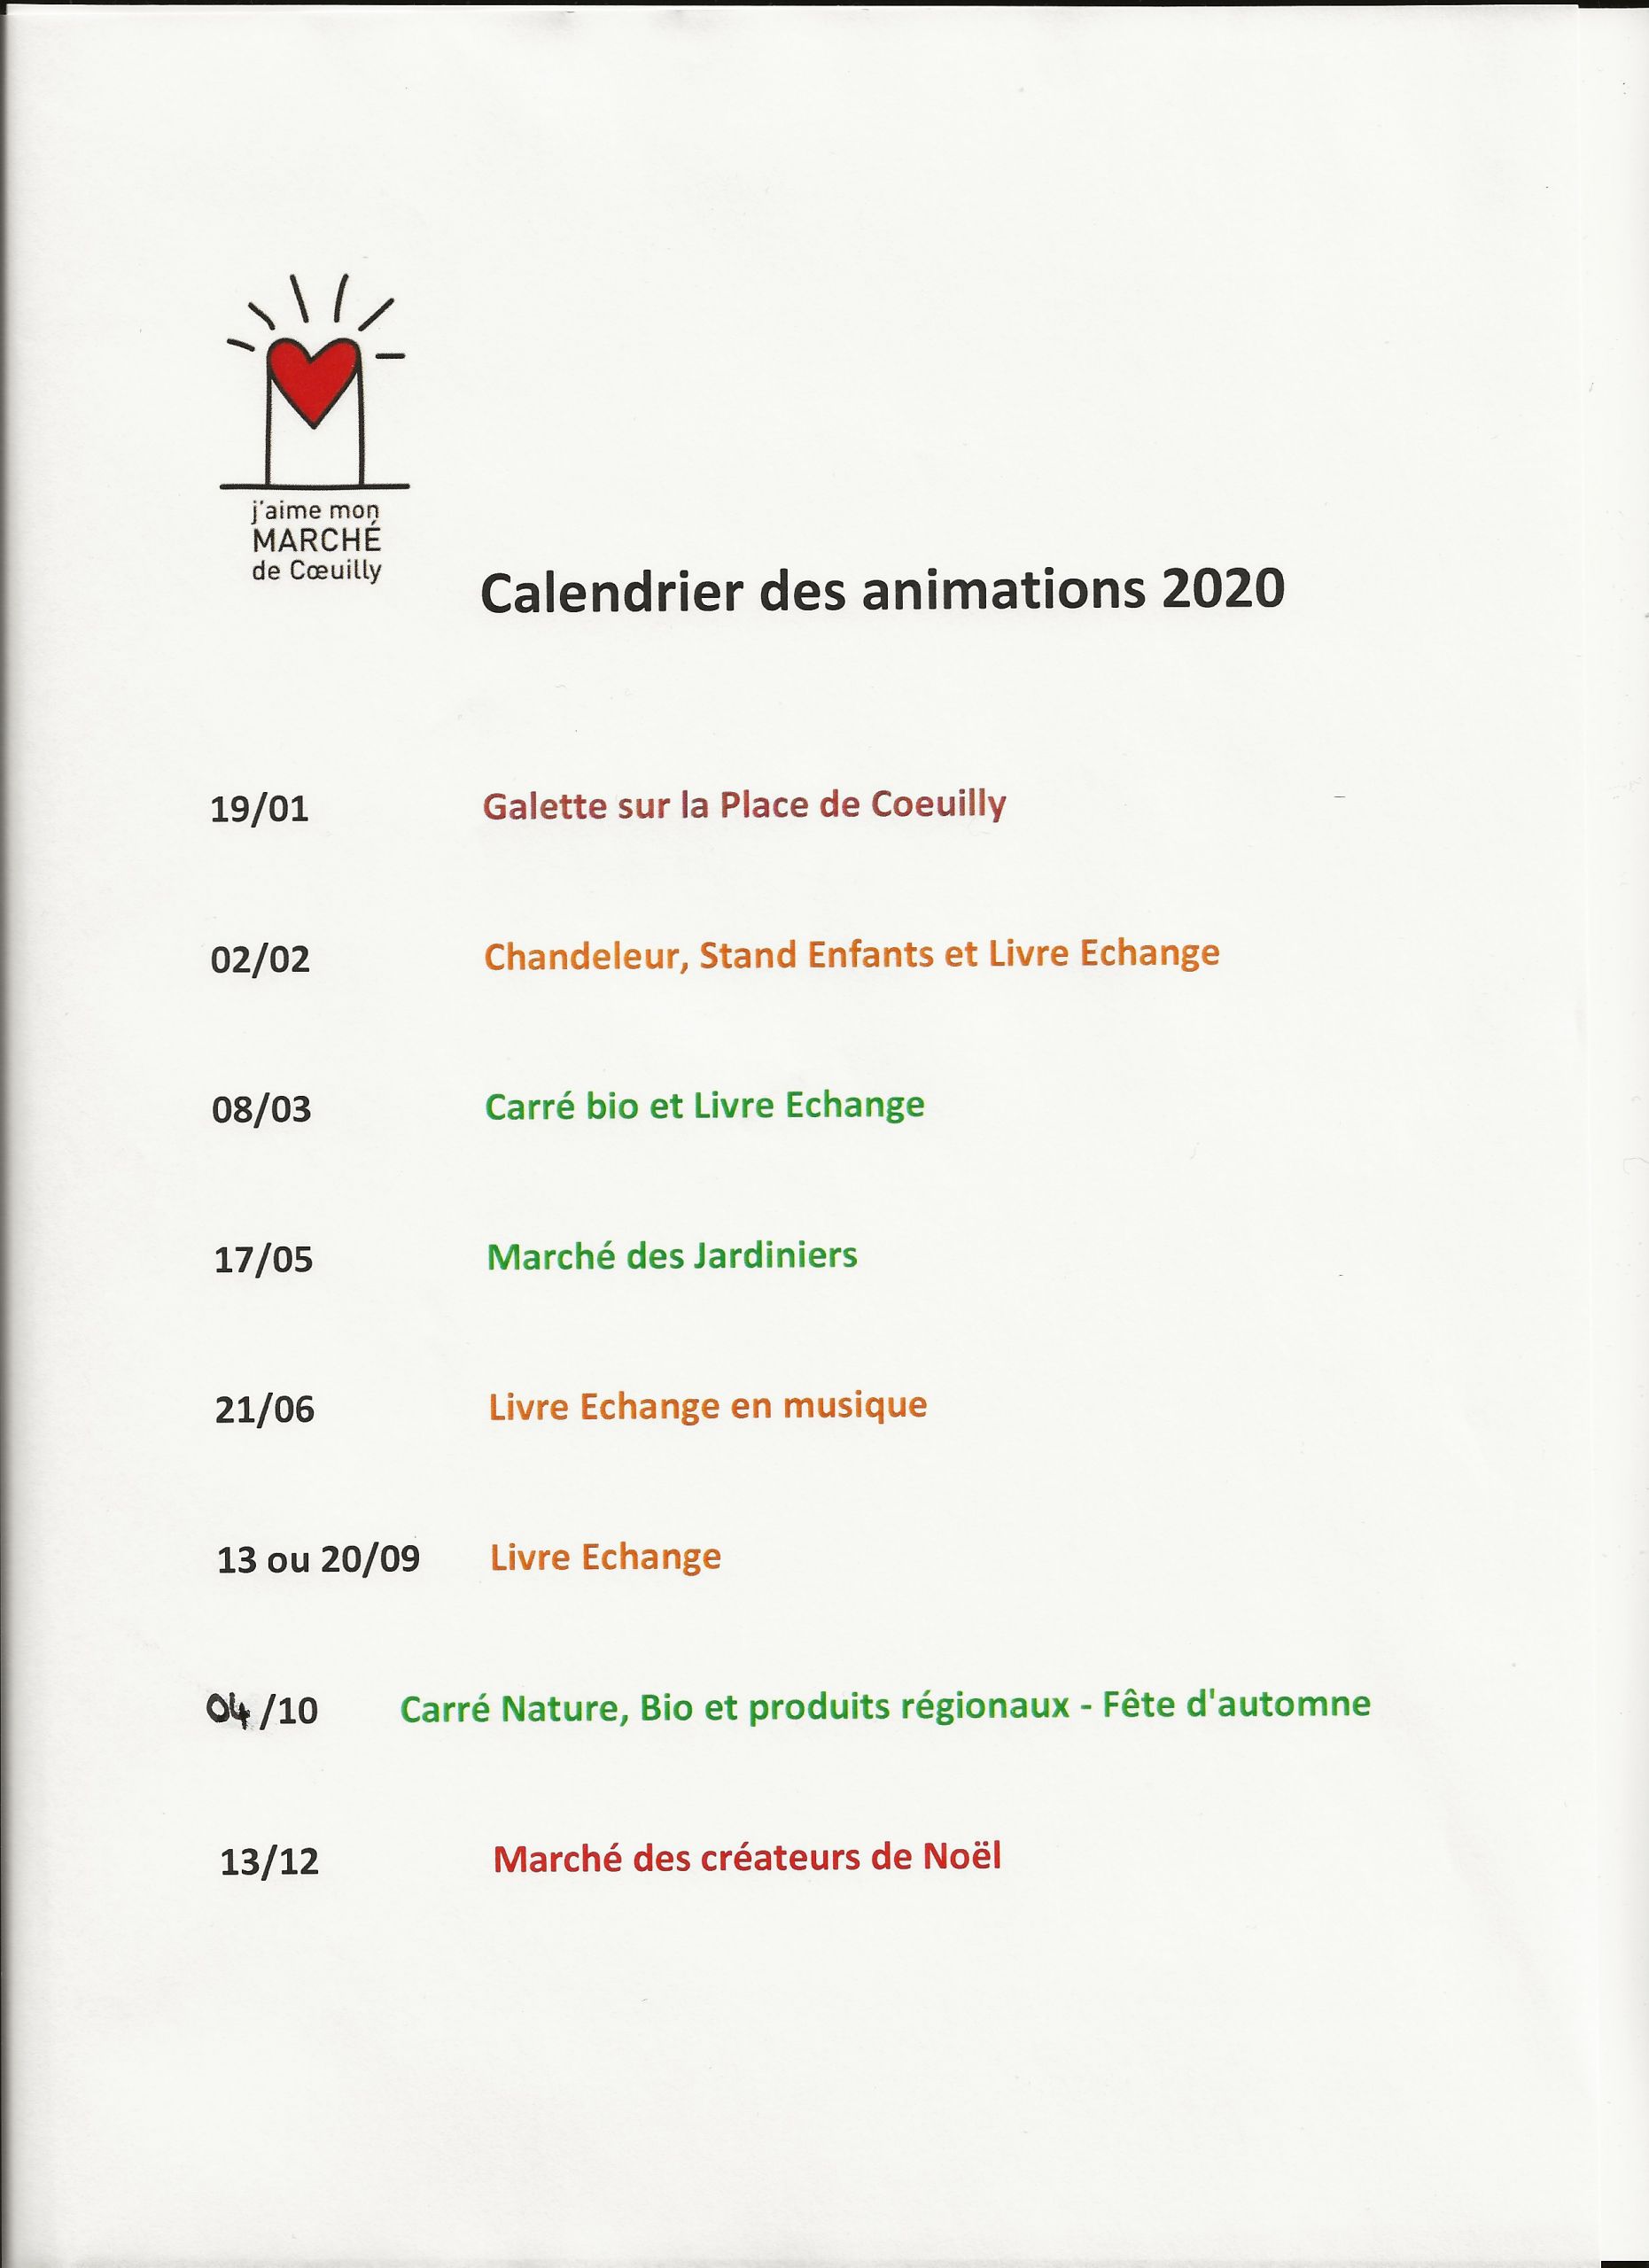 Pergola Brico Depot Arrivage 2020 Nouveau Le Marche De Coeuilly